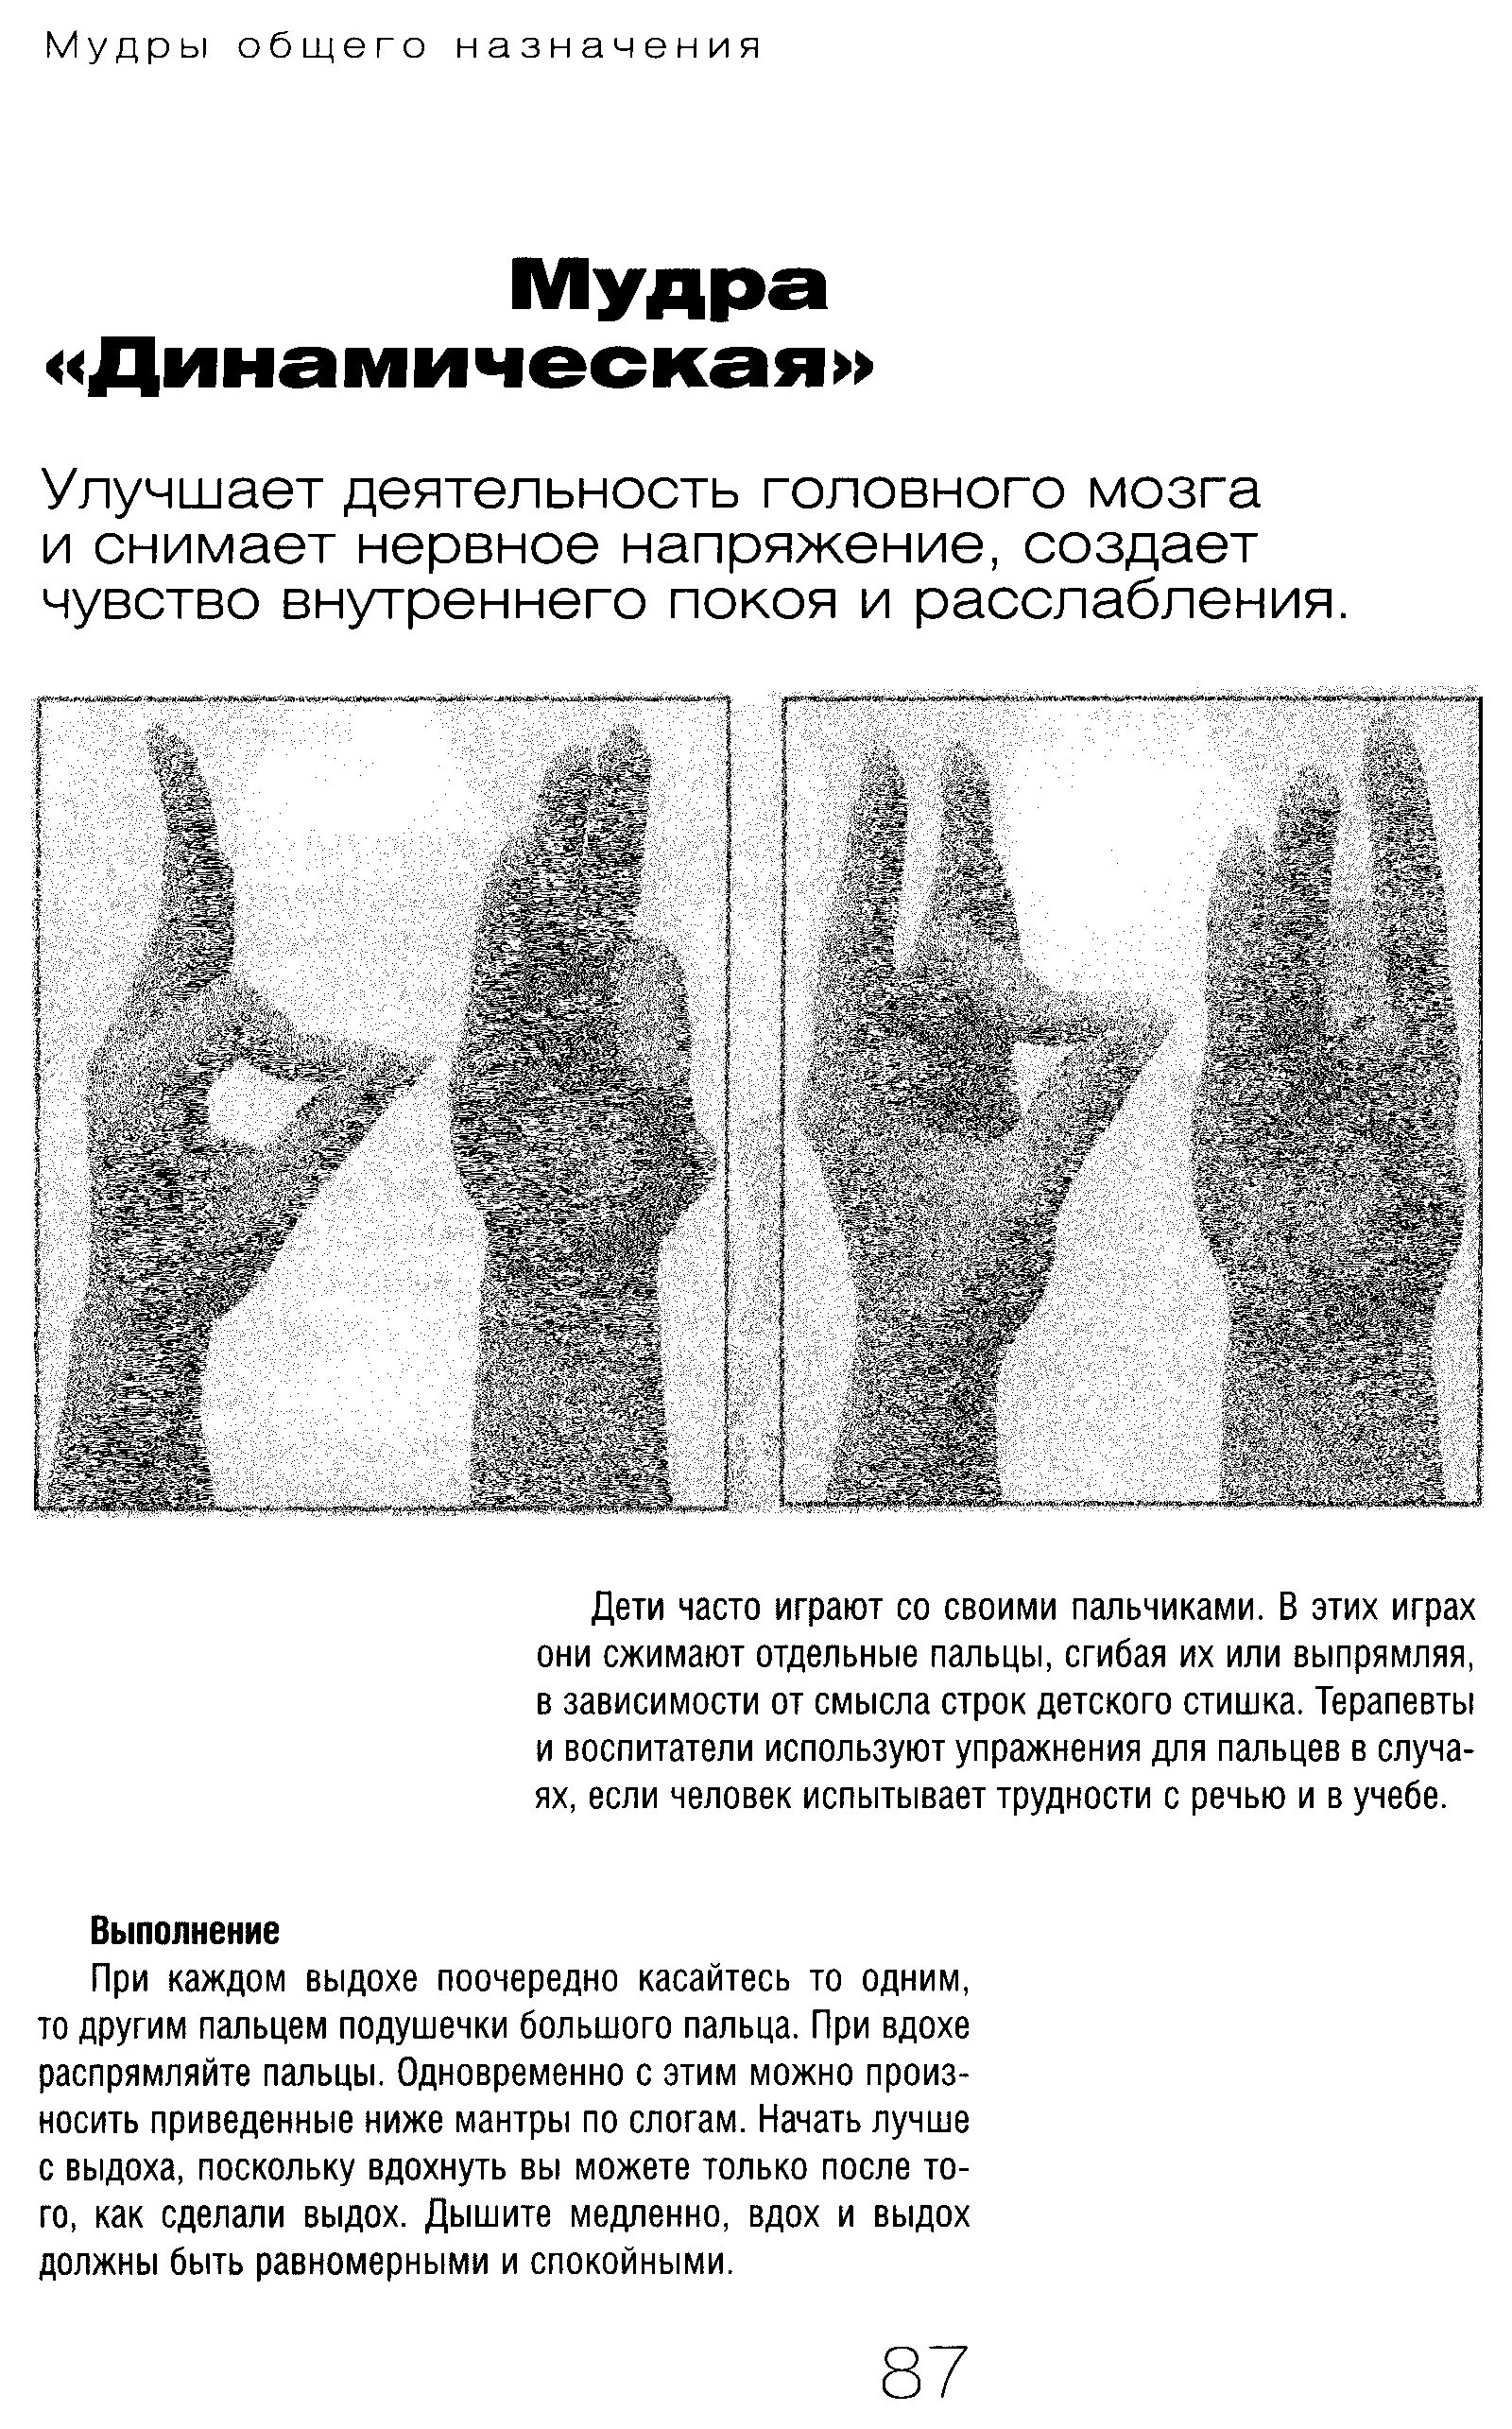 Мудры гимнастика для пальцев рук. Йога для пальцев исцеляющие мудры. Мудры для пальцев рук йога для пальцев. Мудры упражнения для пальцев рук.